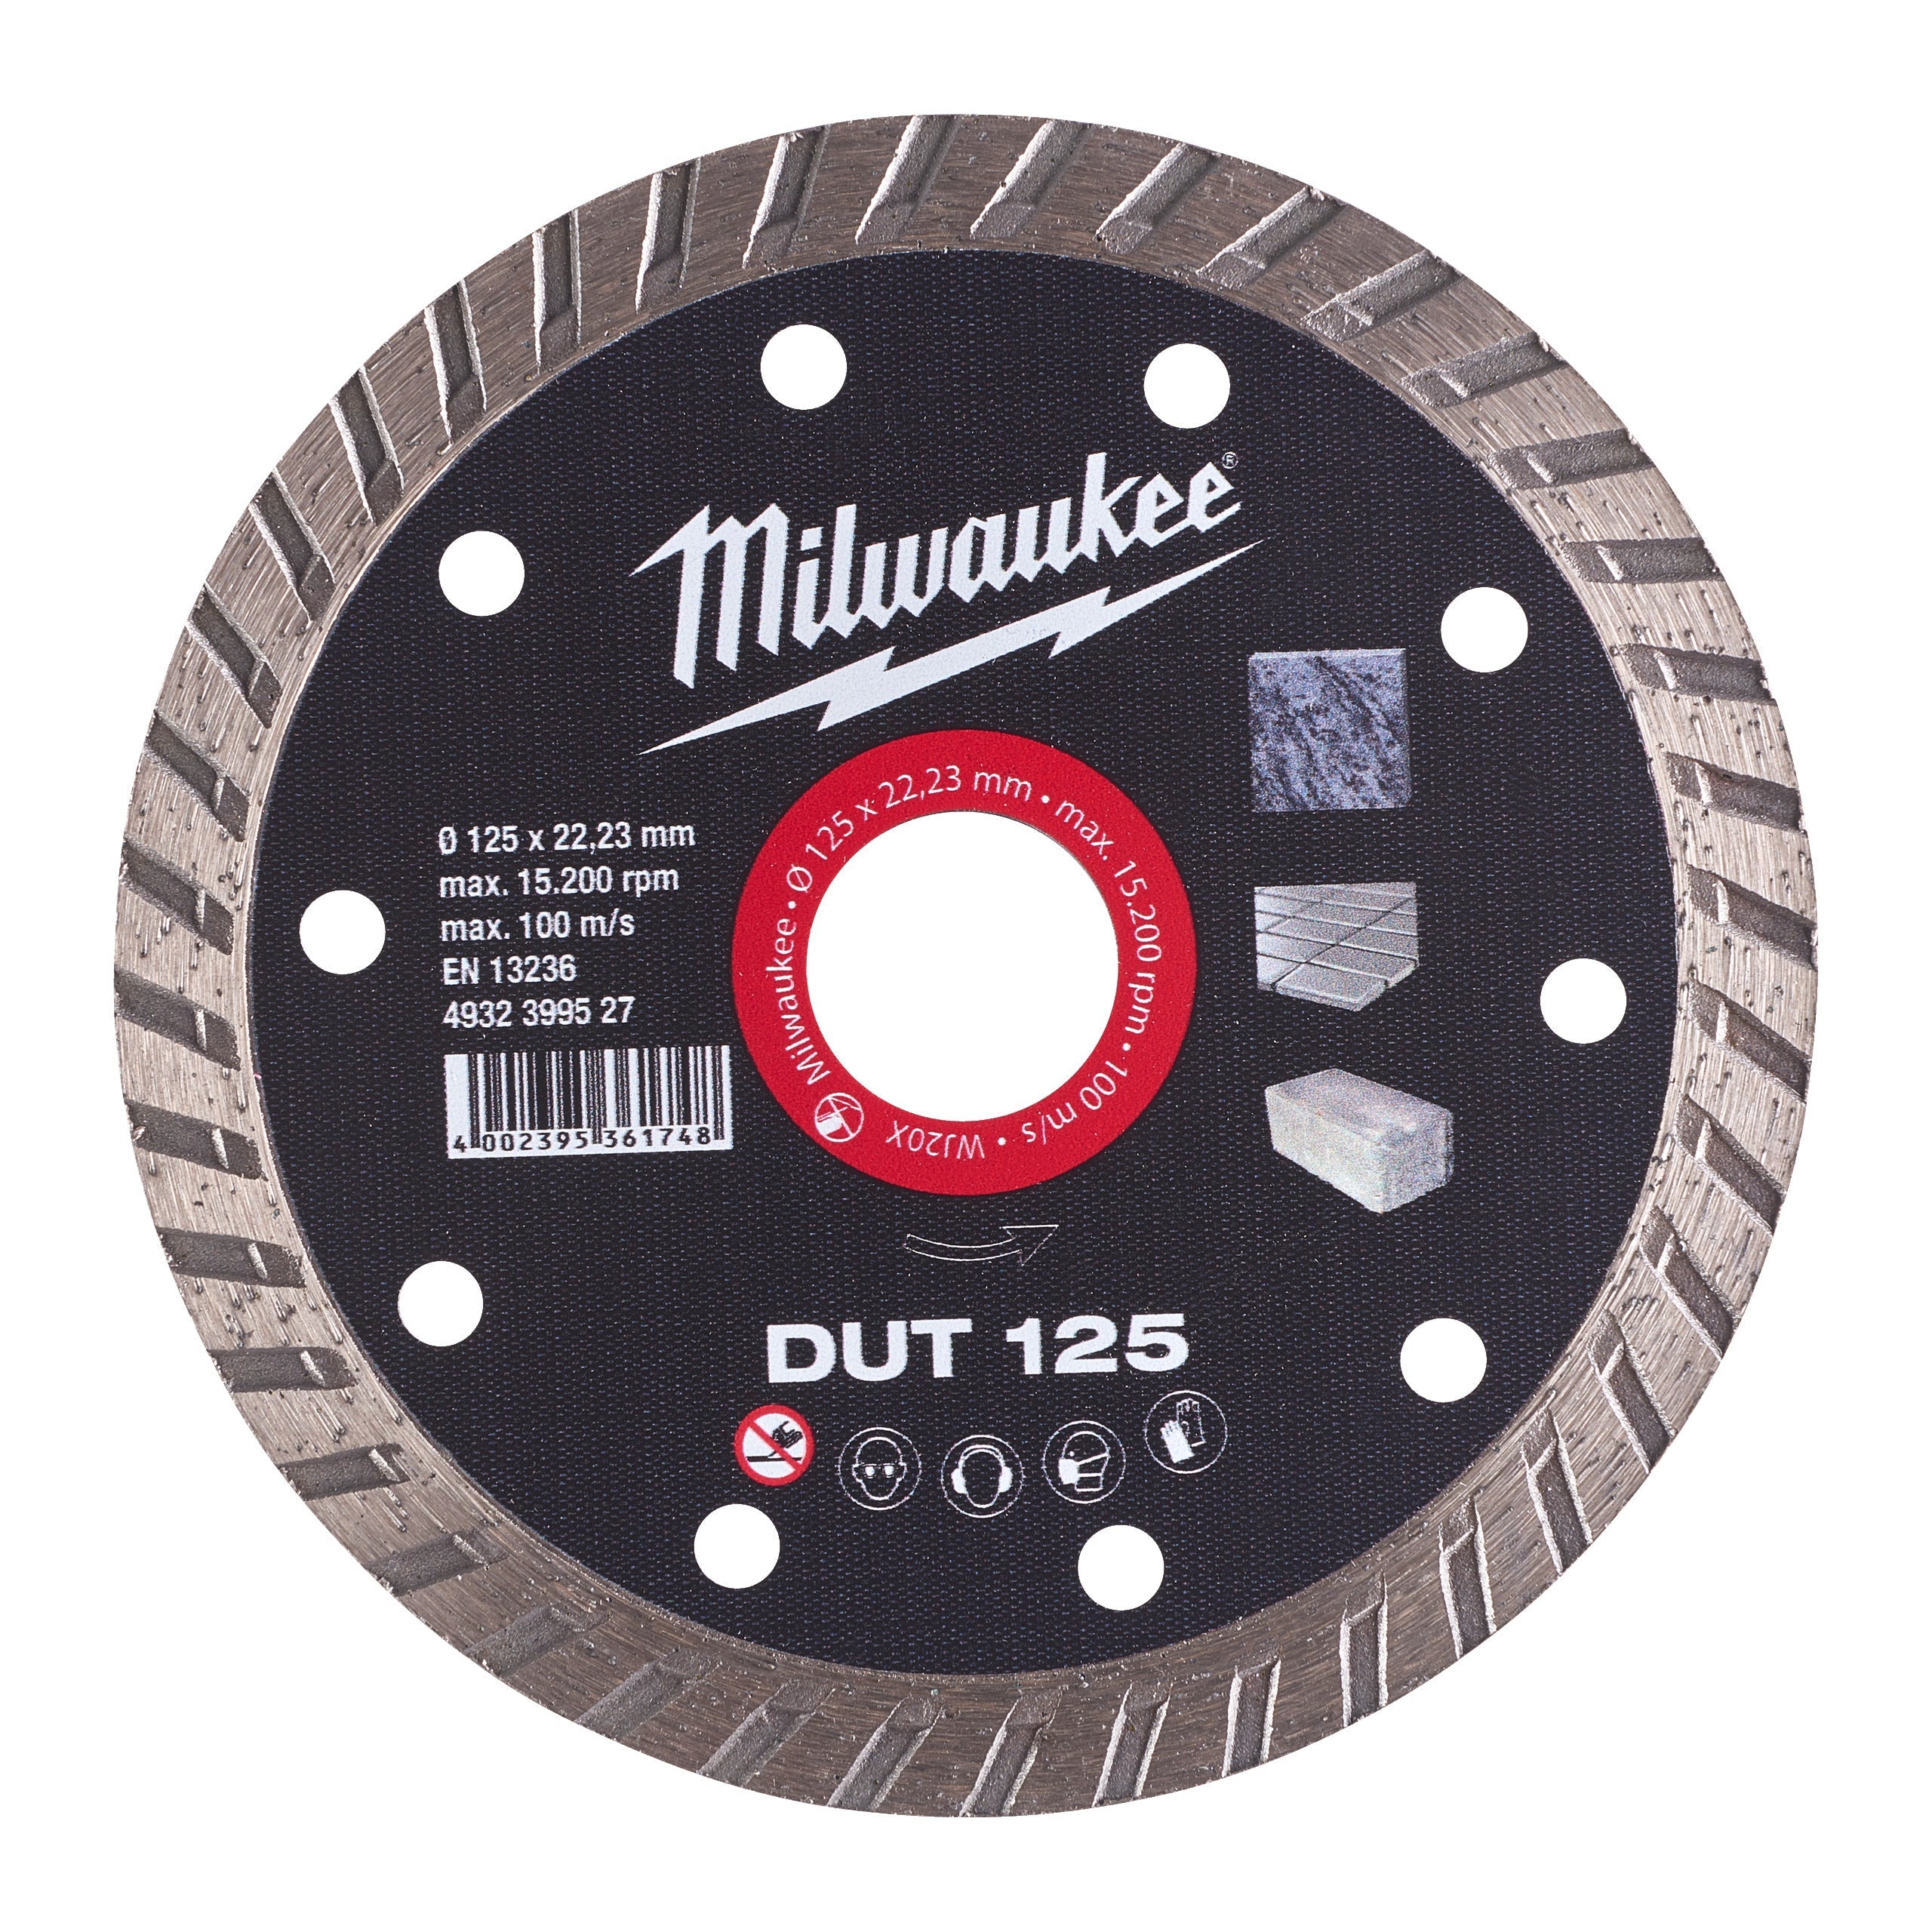 Disc diamantat DUT 125 x 22,2 mm, Milwaukee cod 4932399527